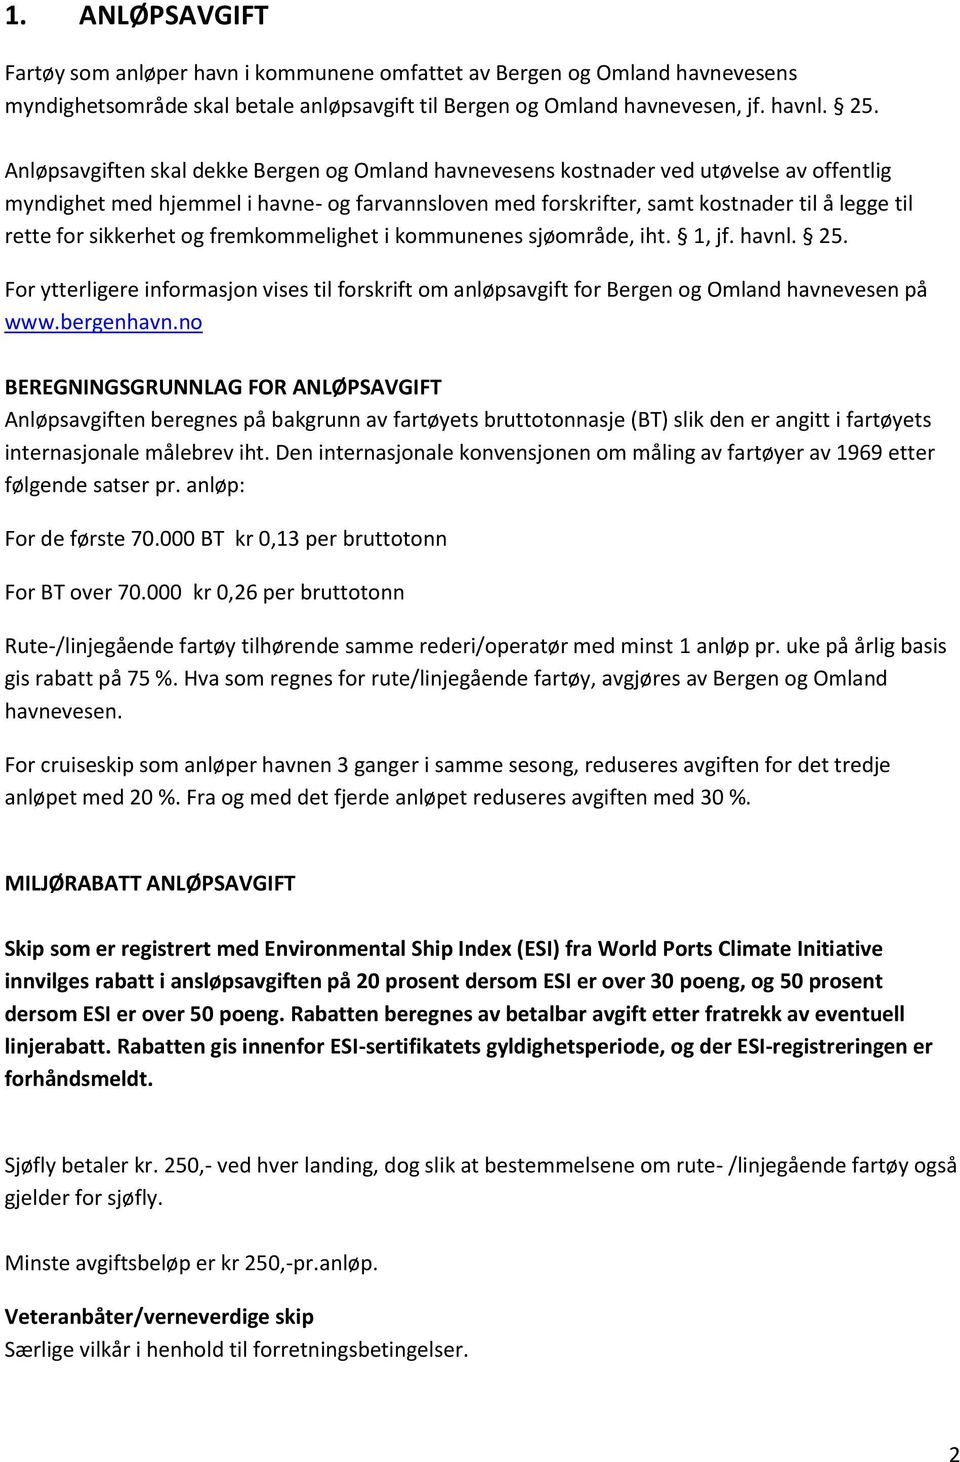 sikkerhet og fremkommelighet i kommunenes sjøområde, iht. 1, jf. havnl. 25. For ytterligere informasjon vises til forskrift om anløpsavgift for Bergen og Omland havnevesen på www.bergenhavn.